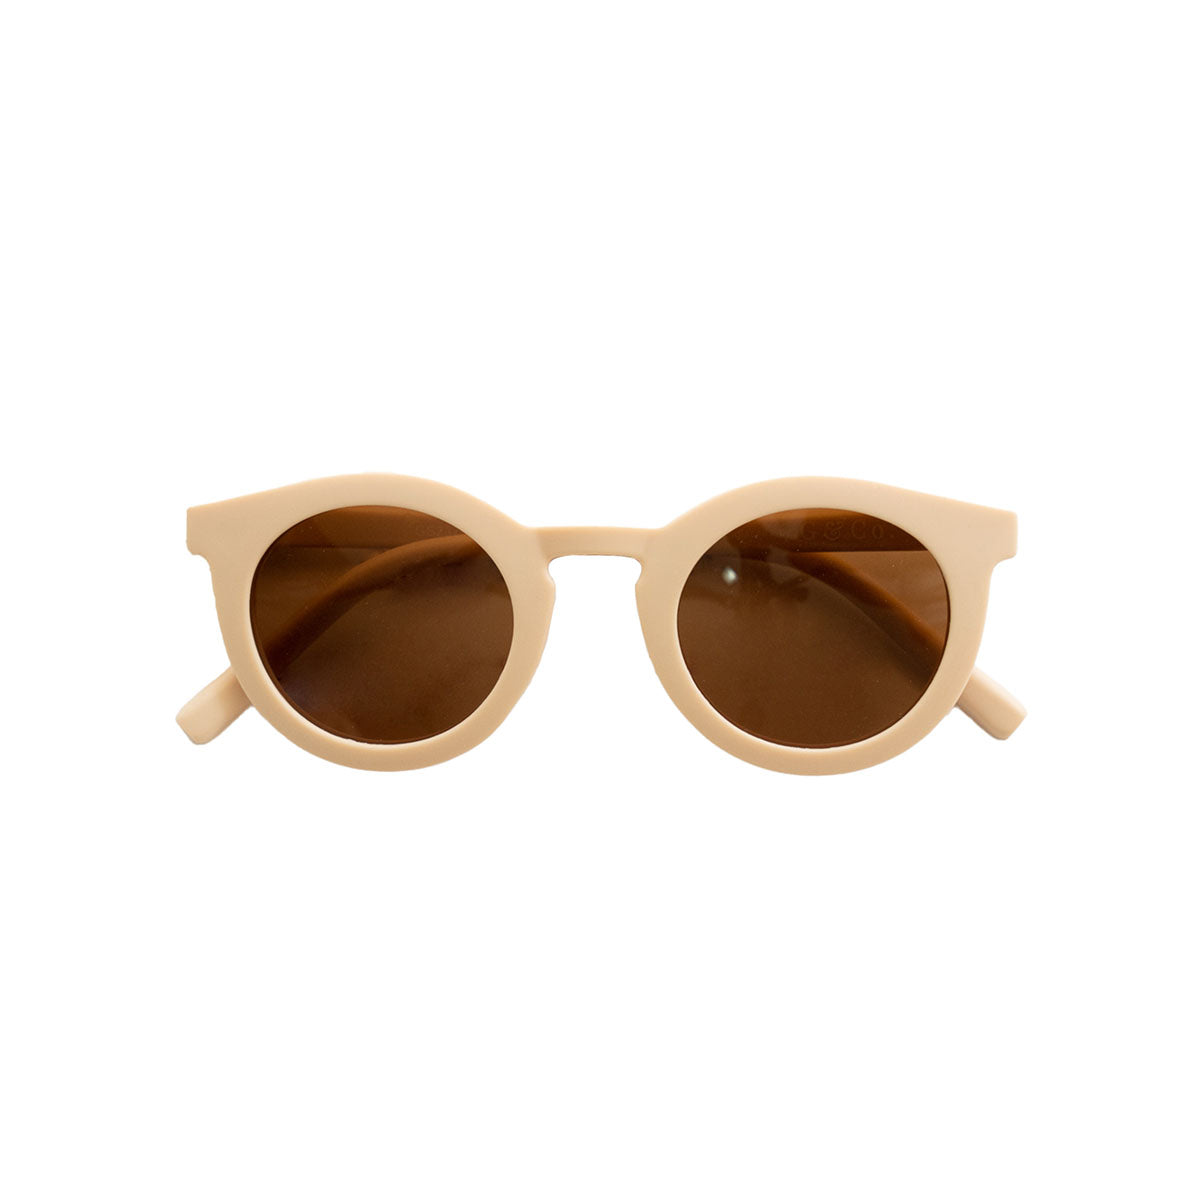 De Grech & co. zonnebril classic adult in de kleur shell is de perfecte keuze voor trendy en modebewuste moeders en hun mini-me’s. De zonnebril is namelijk ook beschikbaar voor kinderen! VanZus